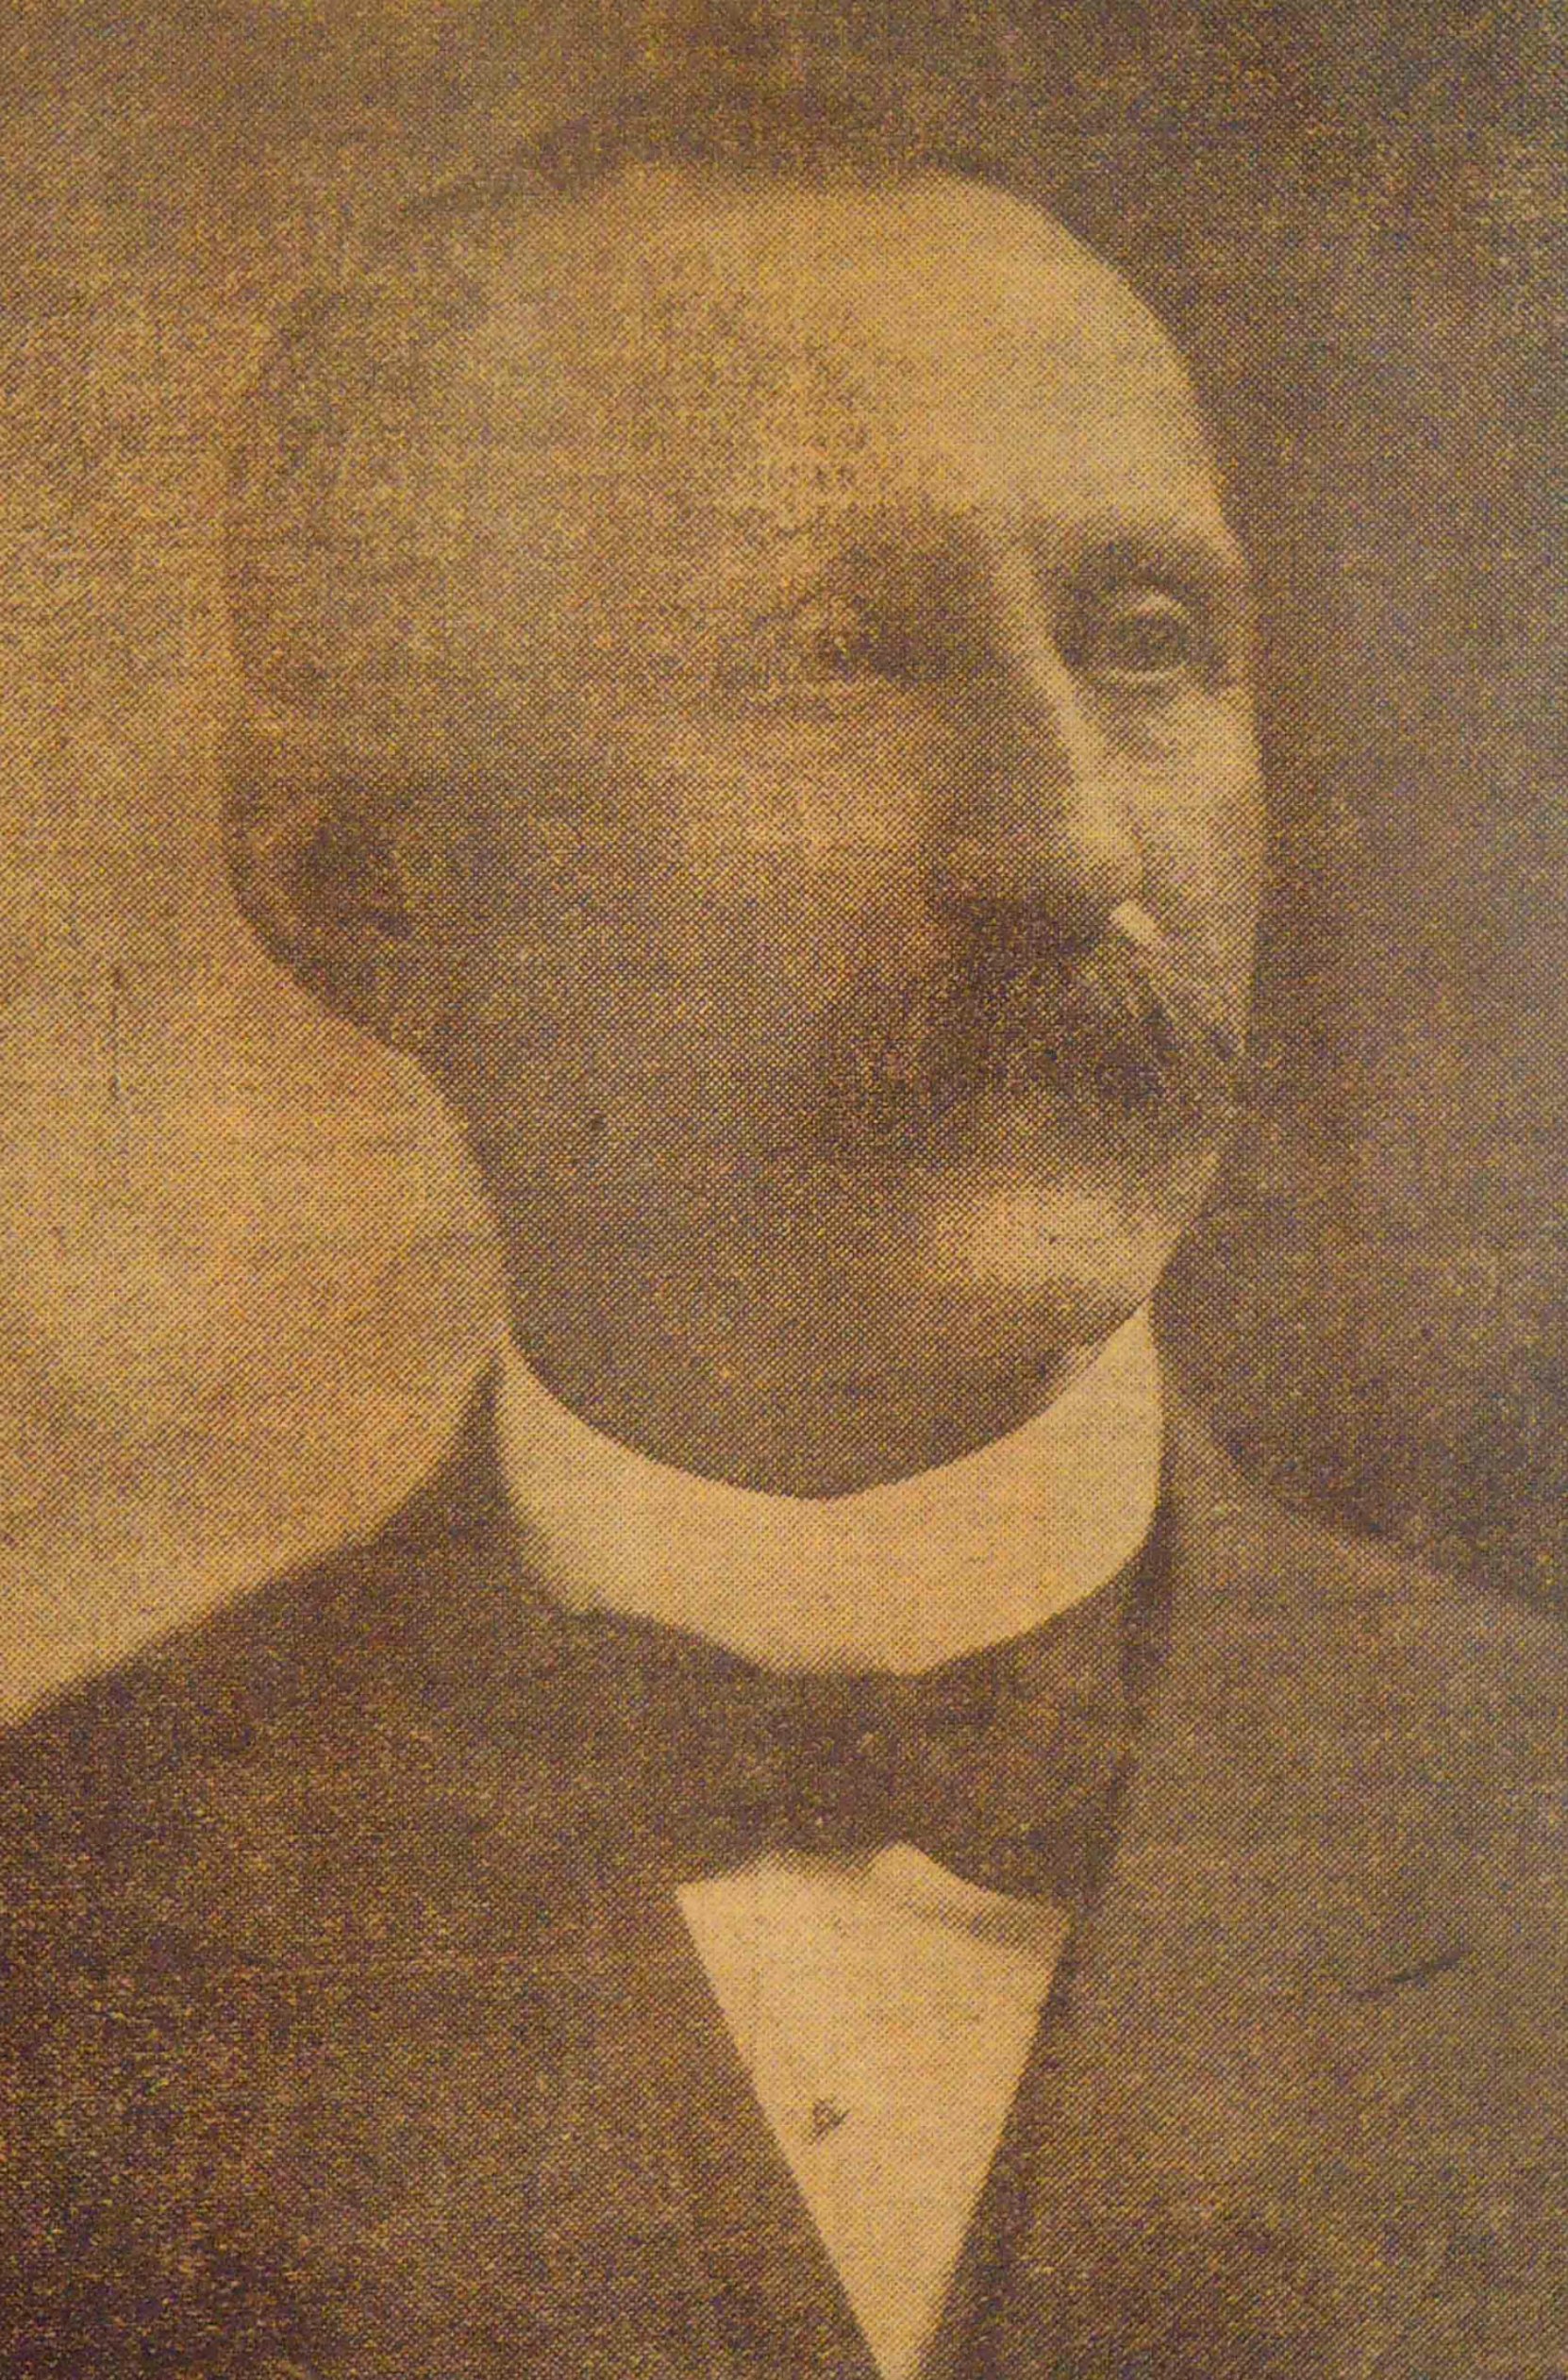 Simon Leiser circa 1910